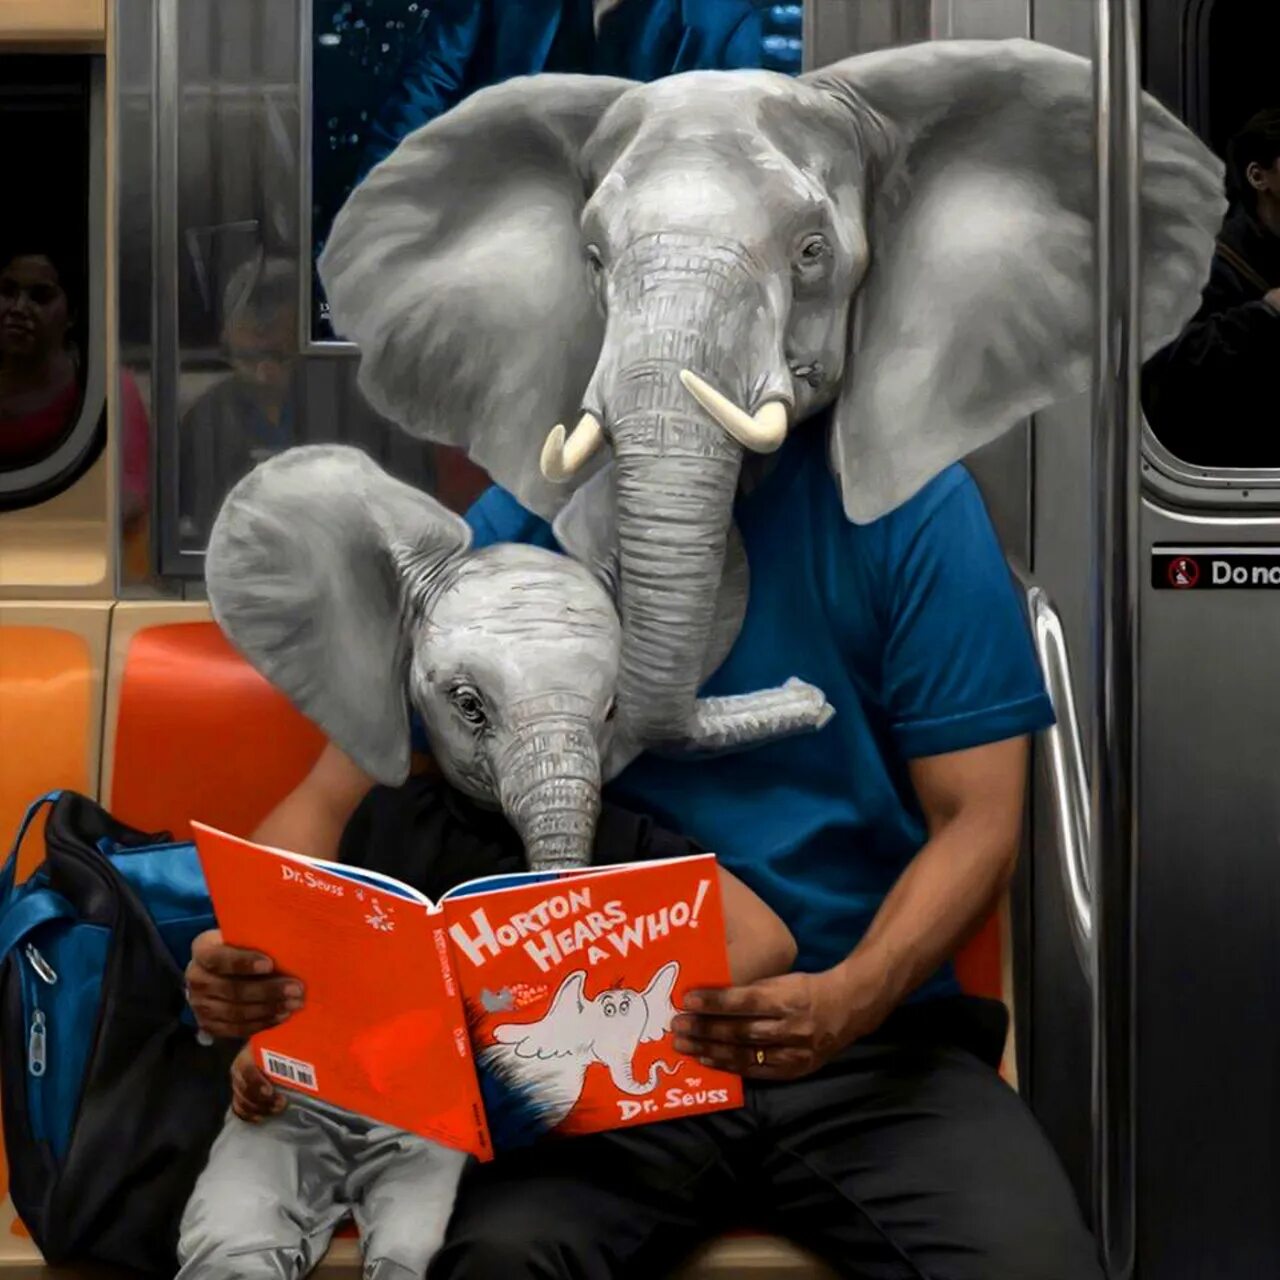 Father elephant. Matthew Grabelsky. Человек с головой животного. Необычное животное в метро.